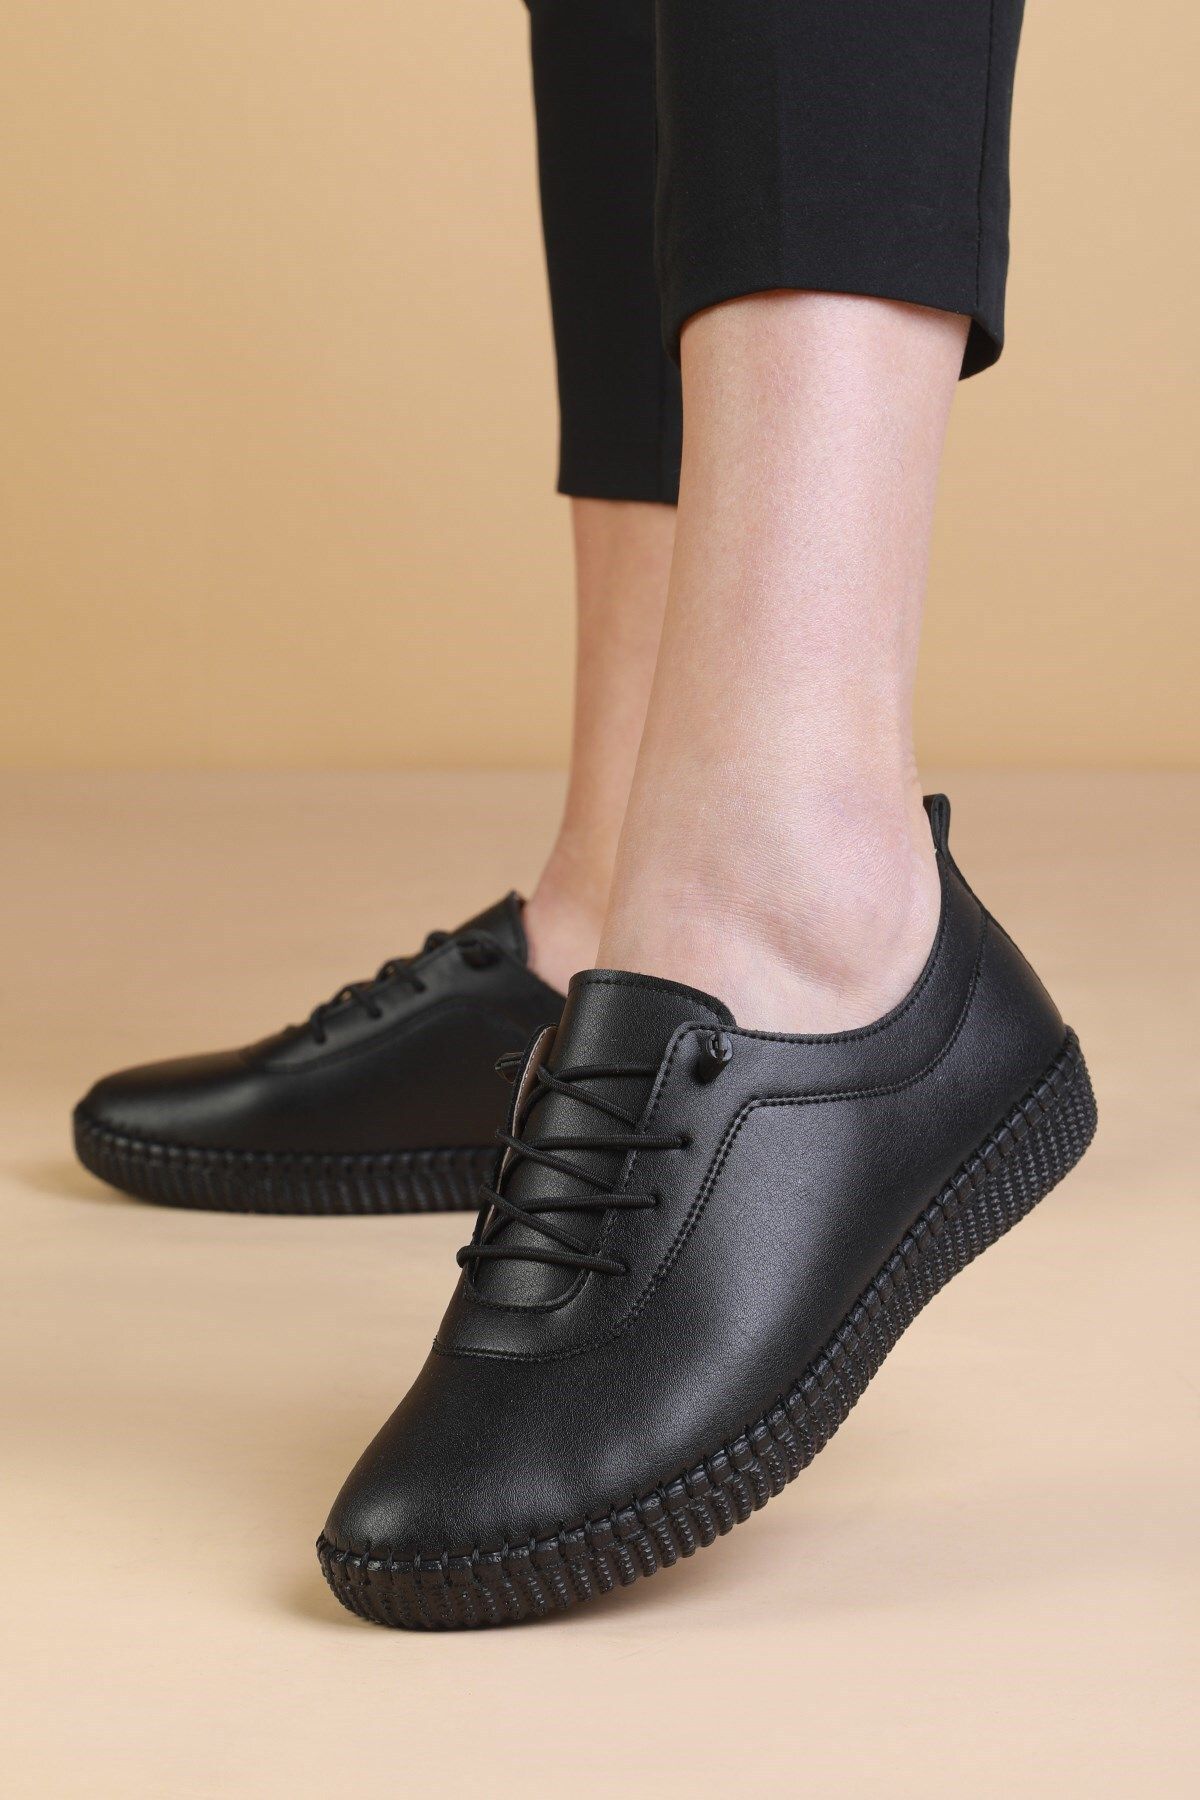 The Dortex Shoes Dortex01 Hakiki Deri Yumuşak Katlanabilir Esnek Ortopedik Taban Kadın Ayakkabısı